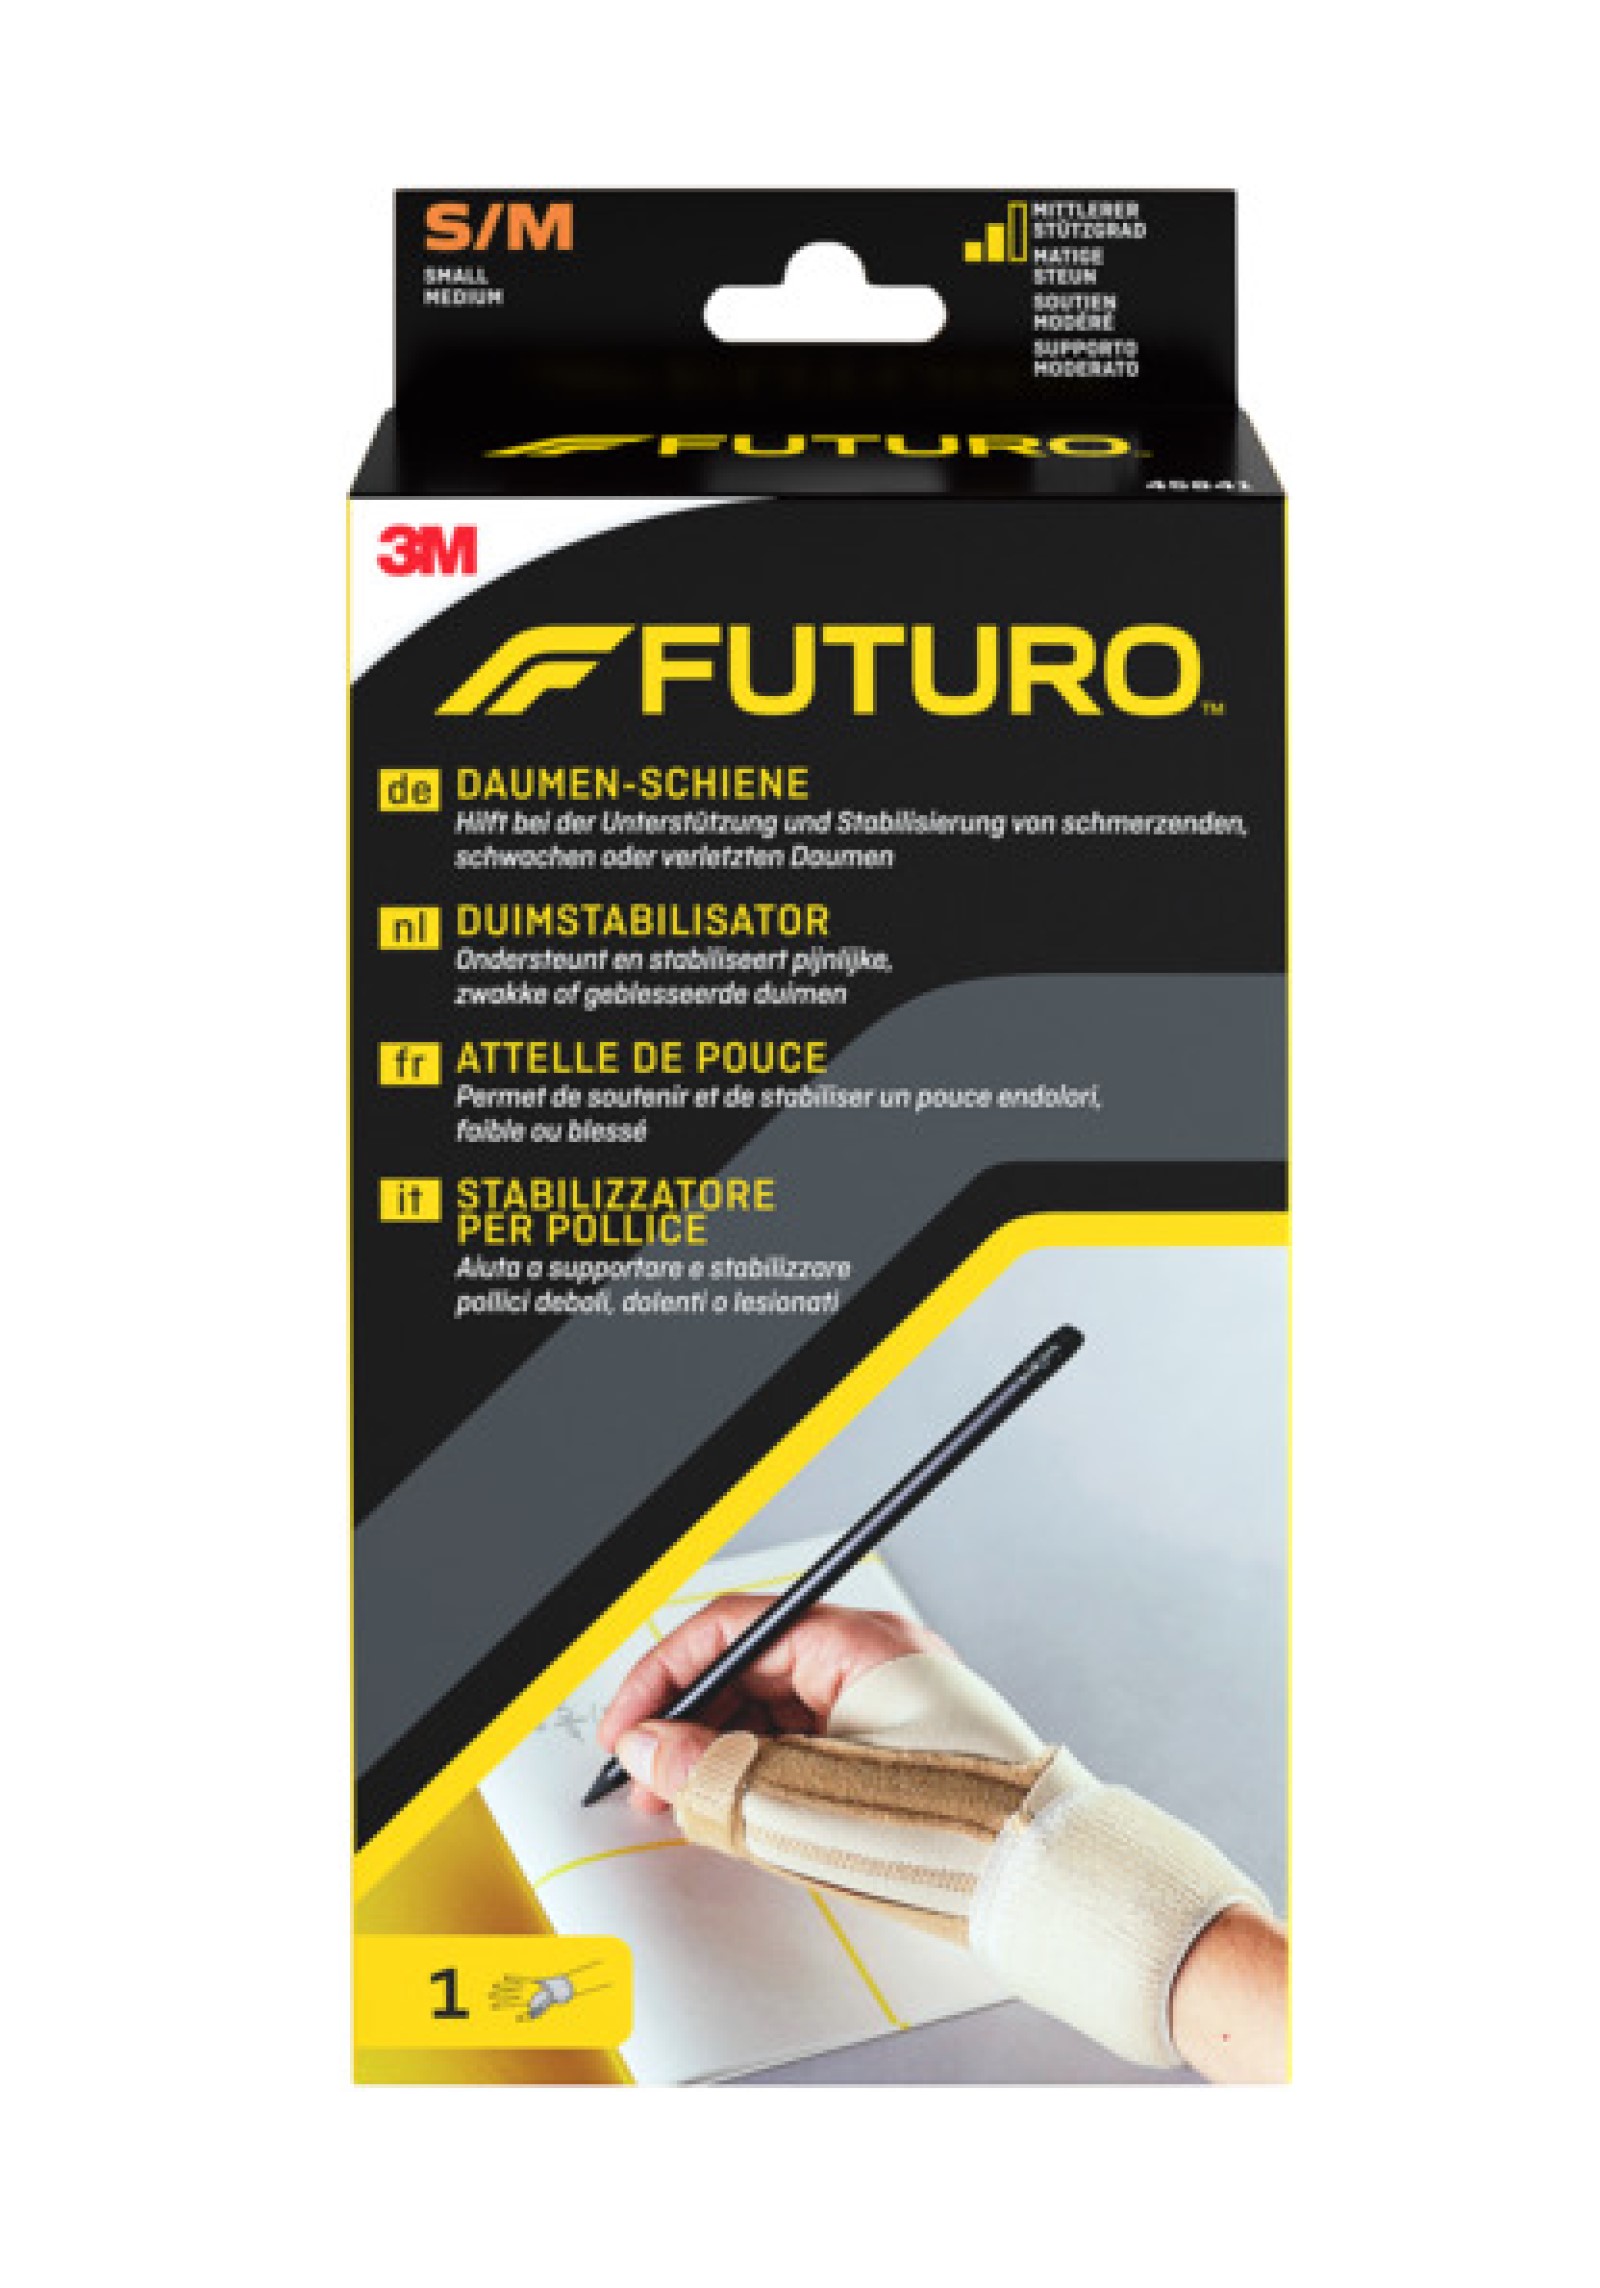 FUTURO™ Daumen-Schiene 45841, S/M (12.7 - 19.1 cm)